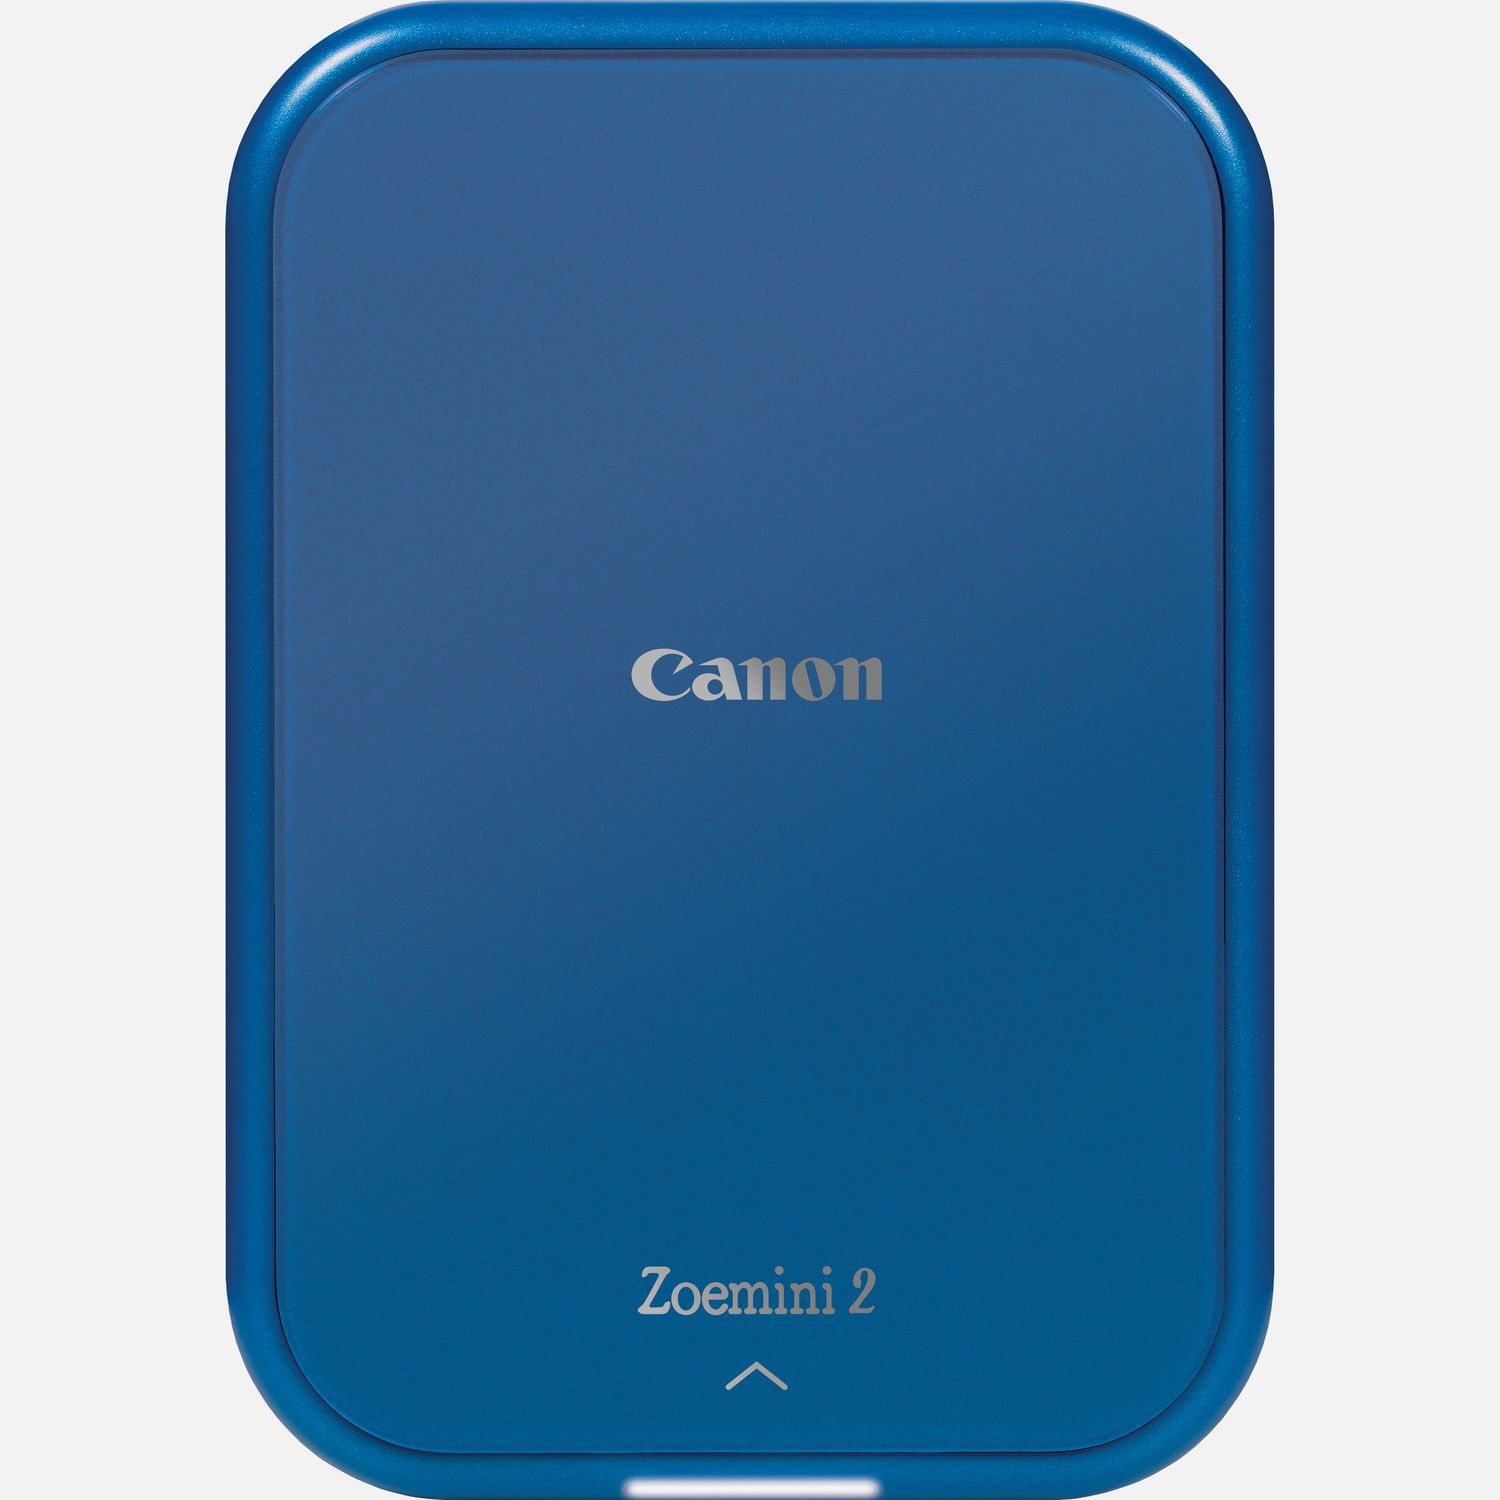 Image of Stampante fotografica portatile a colori Canon Zoemini 2, blu marino